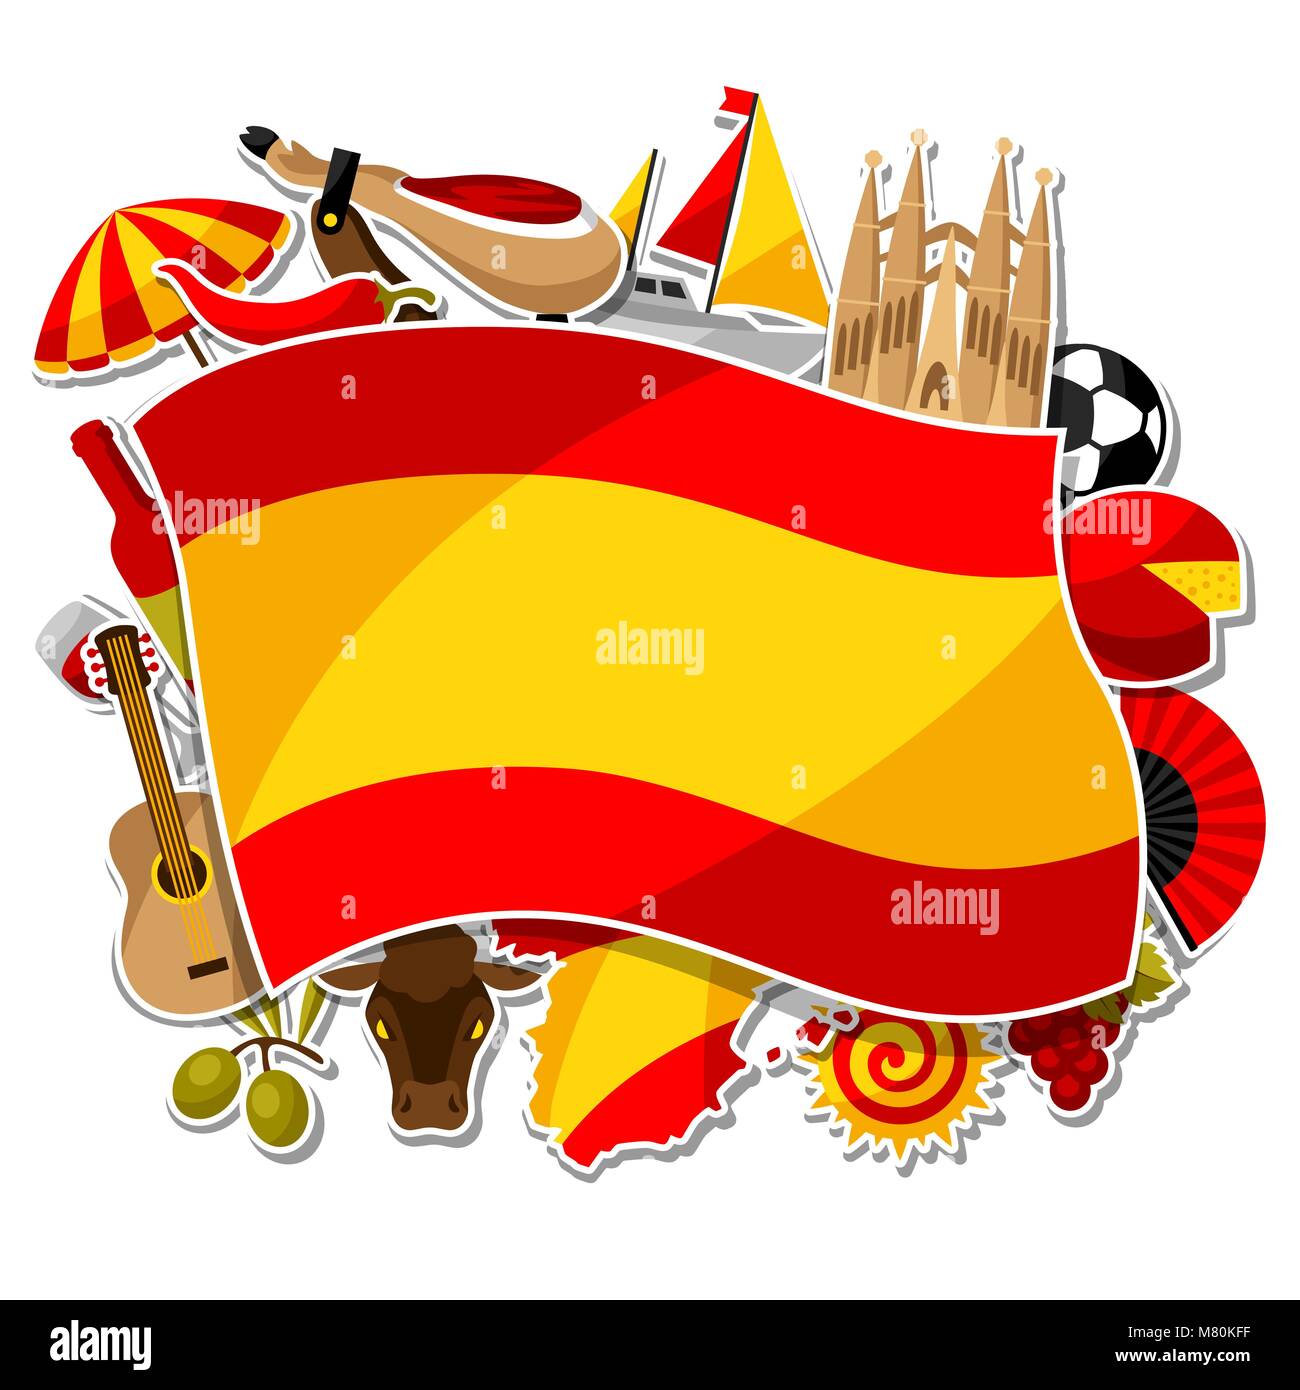 Spanien Hintergrund Design. Spanische traditionelle Aufkleber Symbole und Objekte Stock Vektor